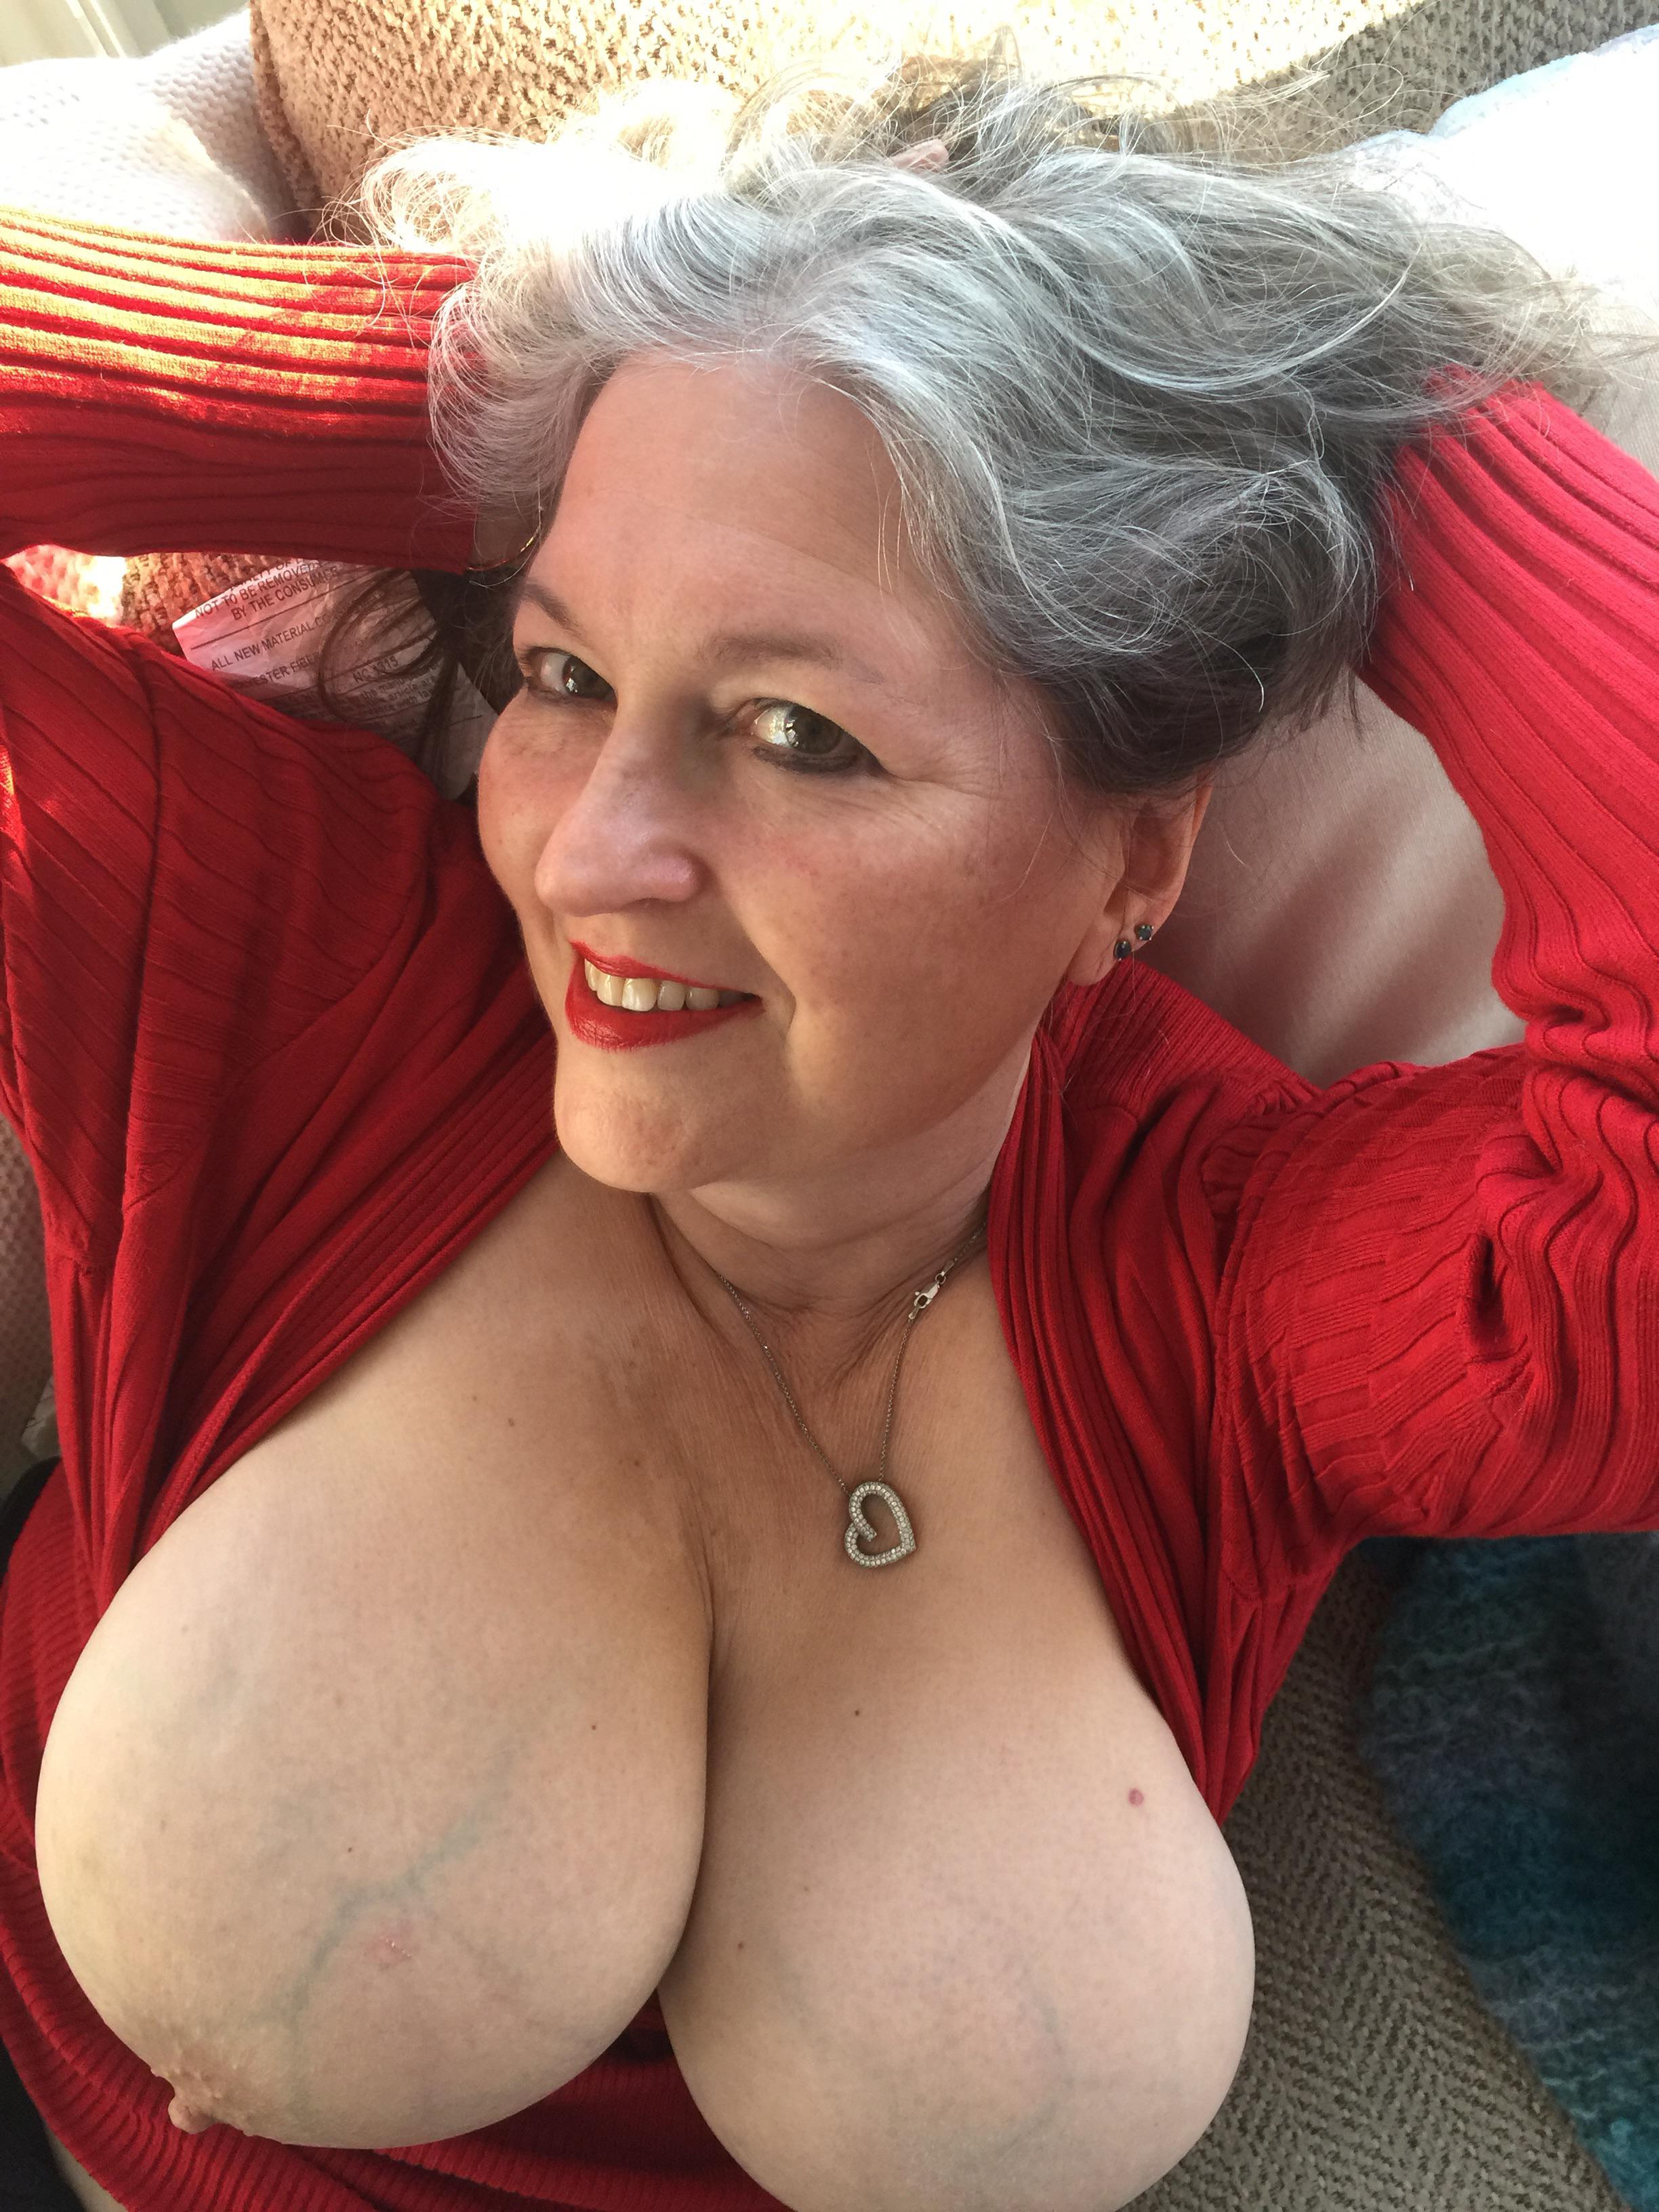 Meine heiße Gilf-Frau (62)!Wer wird ihren Oma-Titten Tribut zollen? Foto